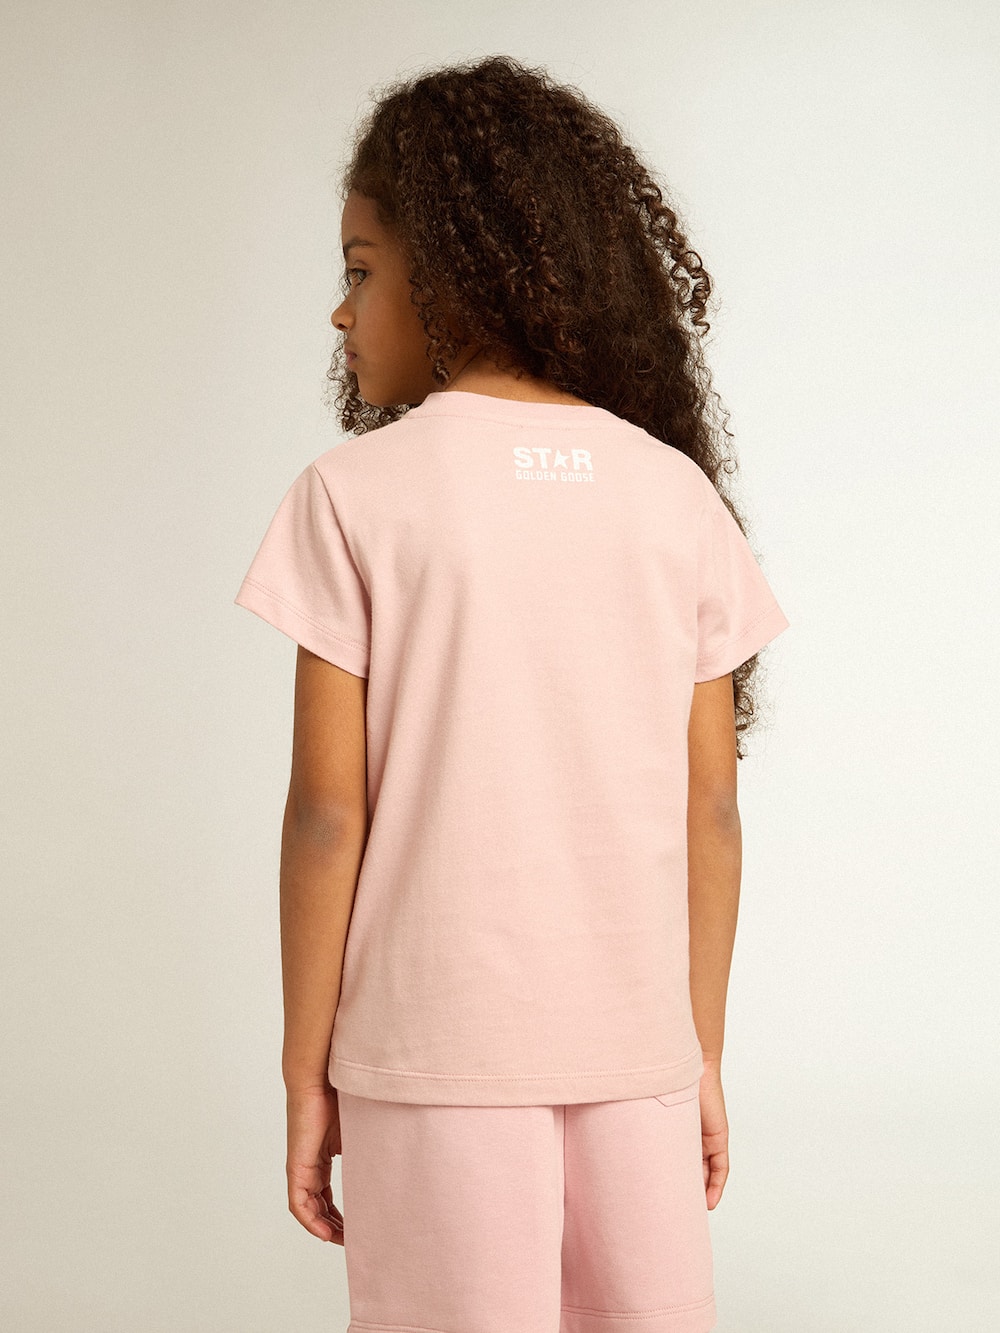 Golden Goose - Rosafarbenes Mädchen-T-Shirt mit Logo und weißem Maxistern in 